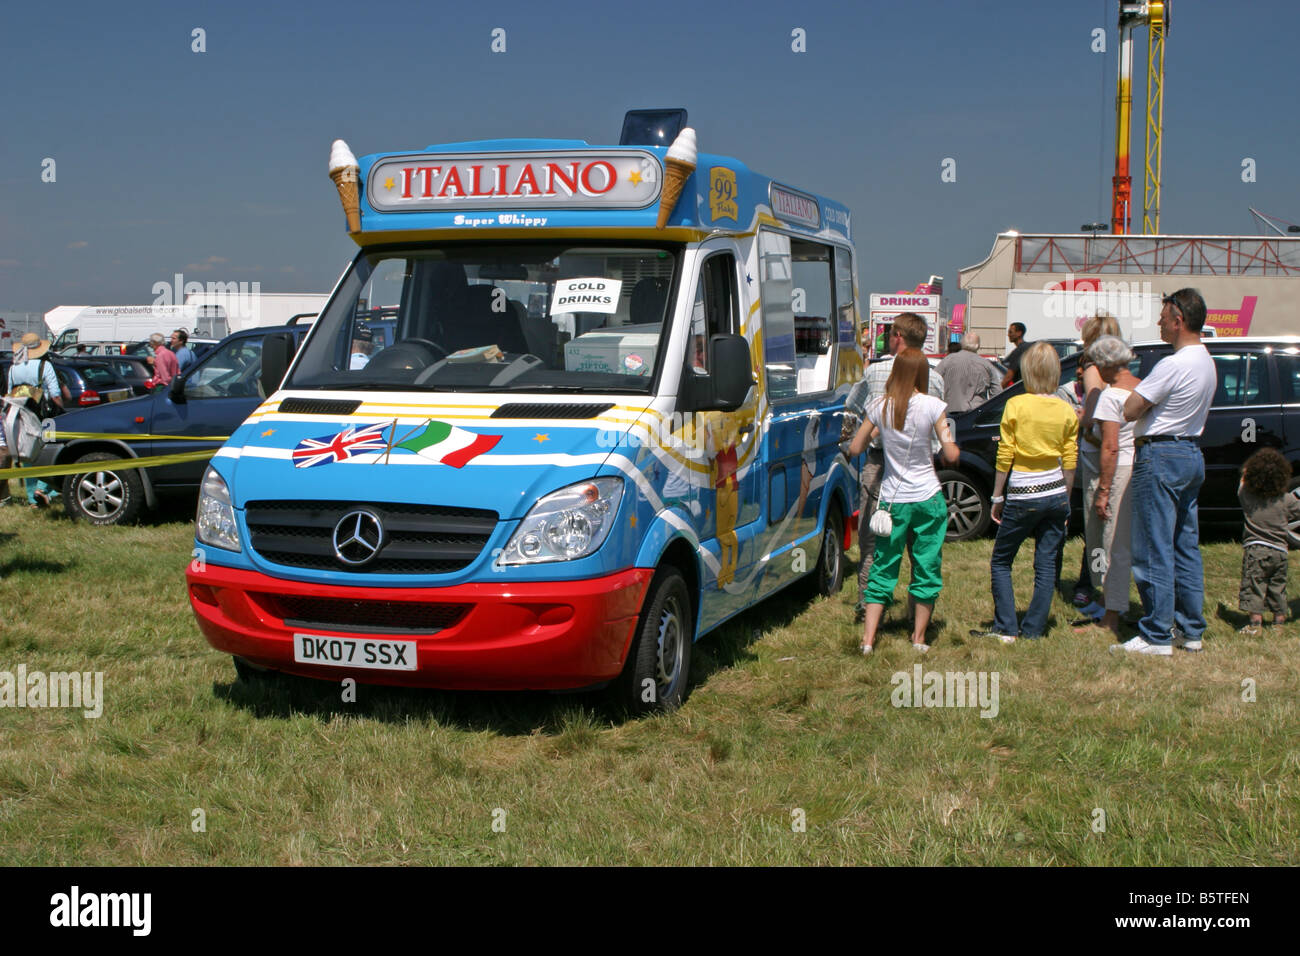 new ice cream van for sale uk